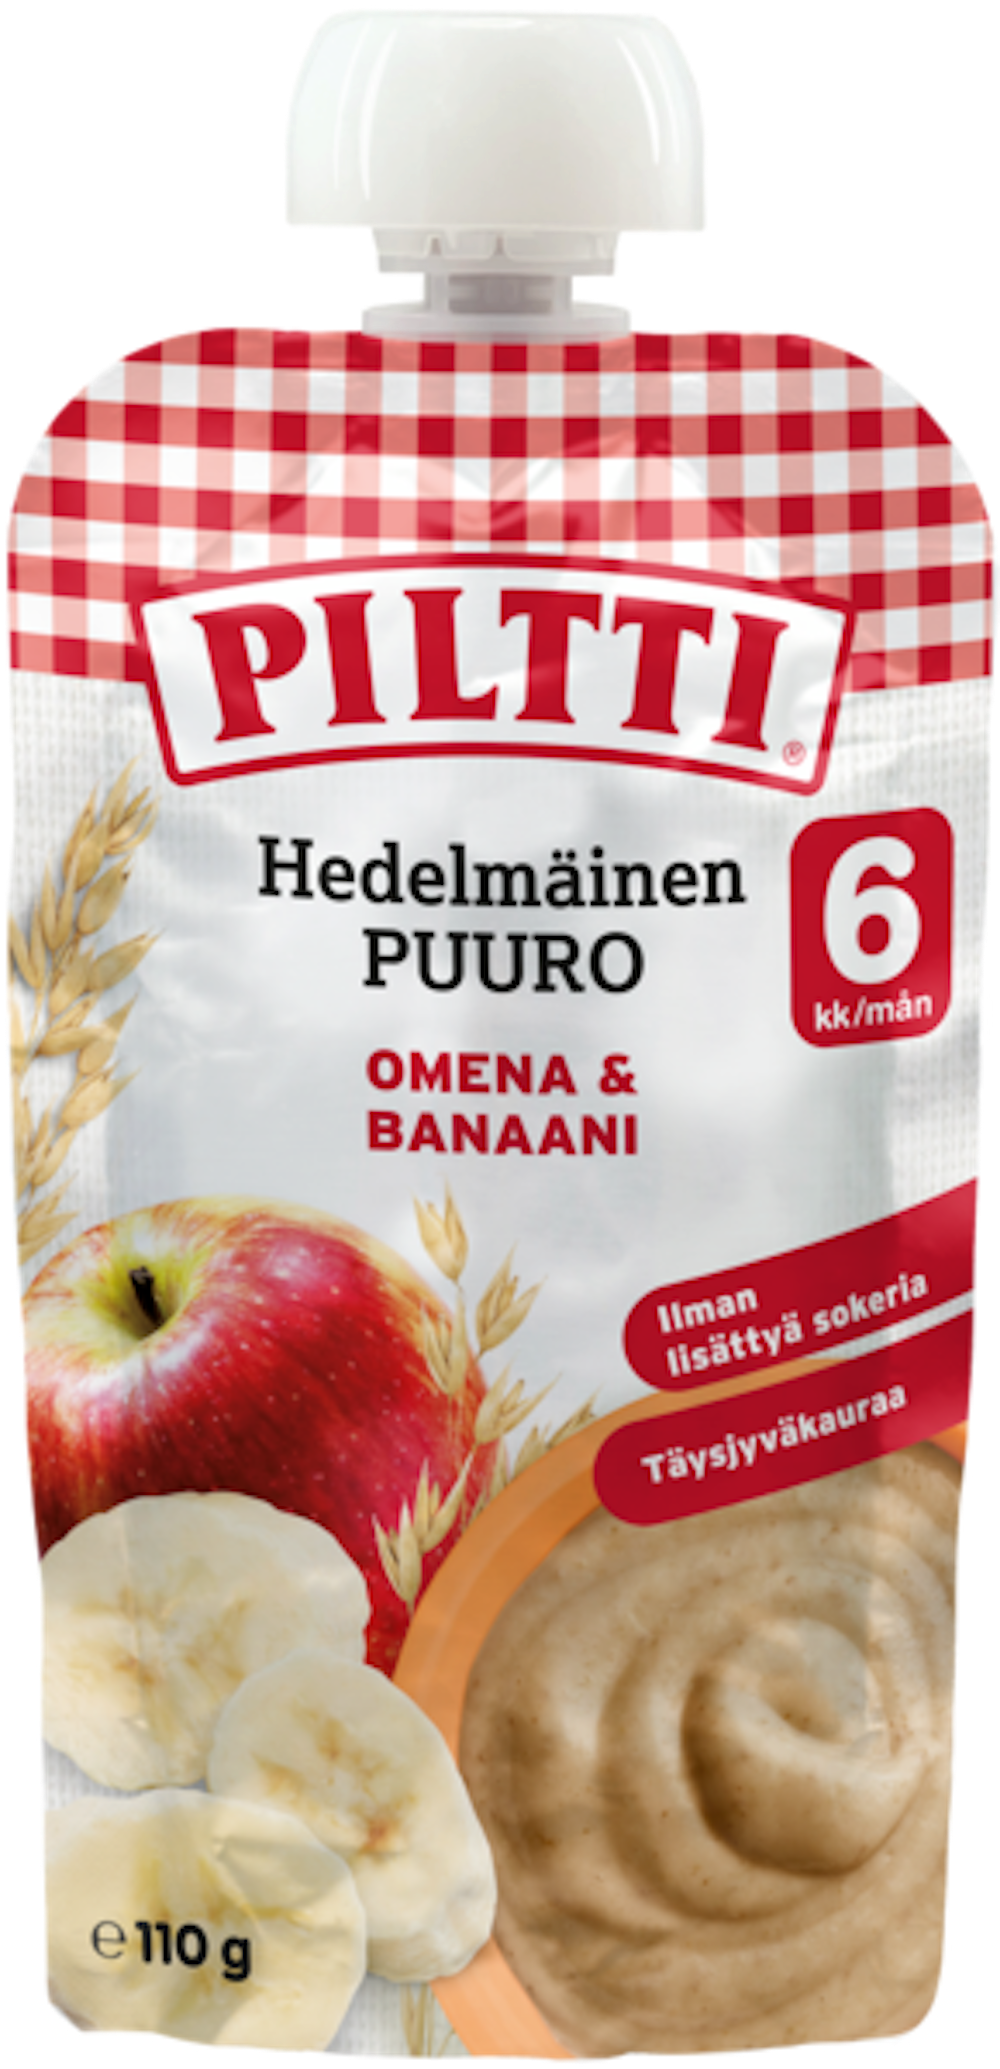 Piltti Hedelmäinen Puuro Omena-banaani 110g 6kk — HoReCa-tukku Kespro